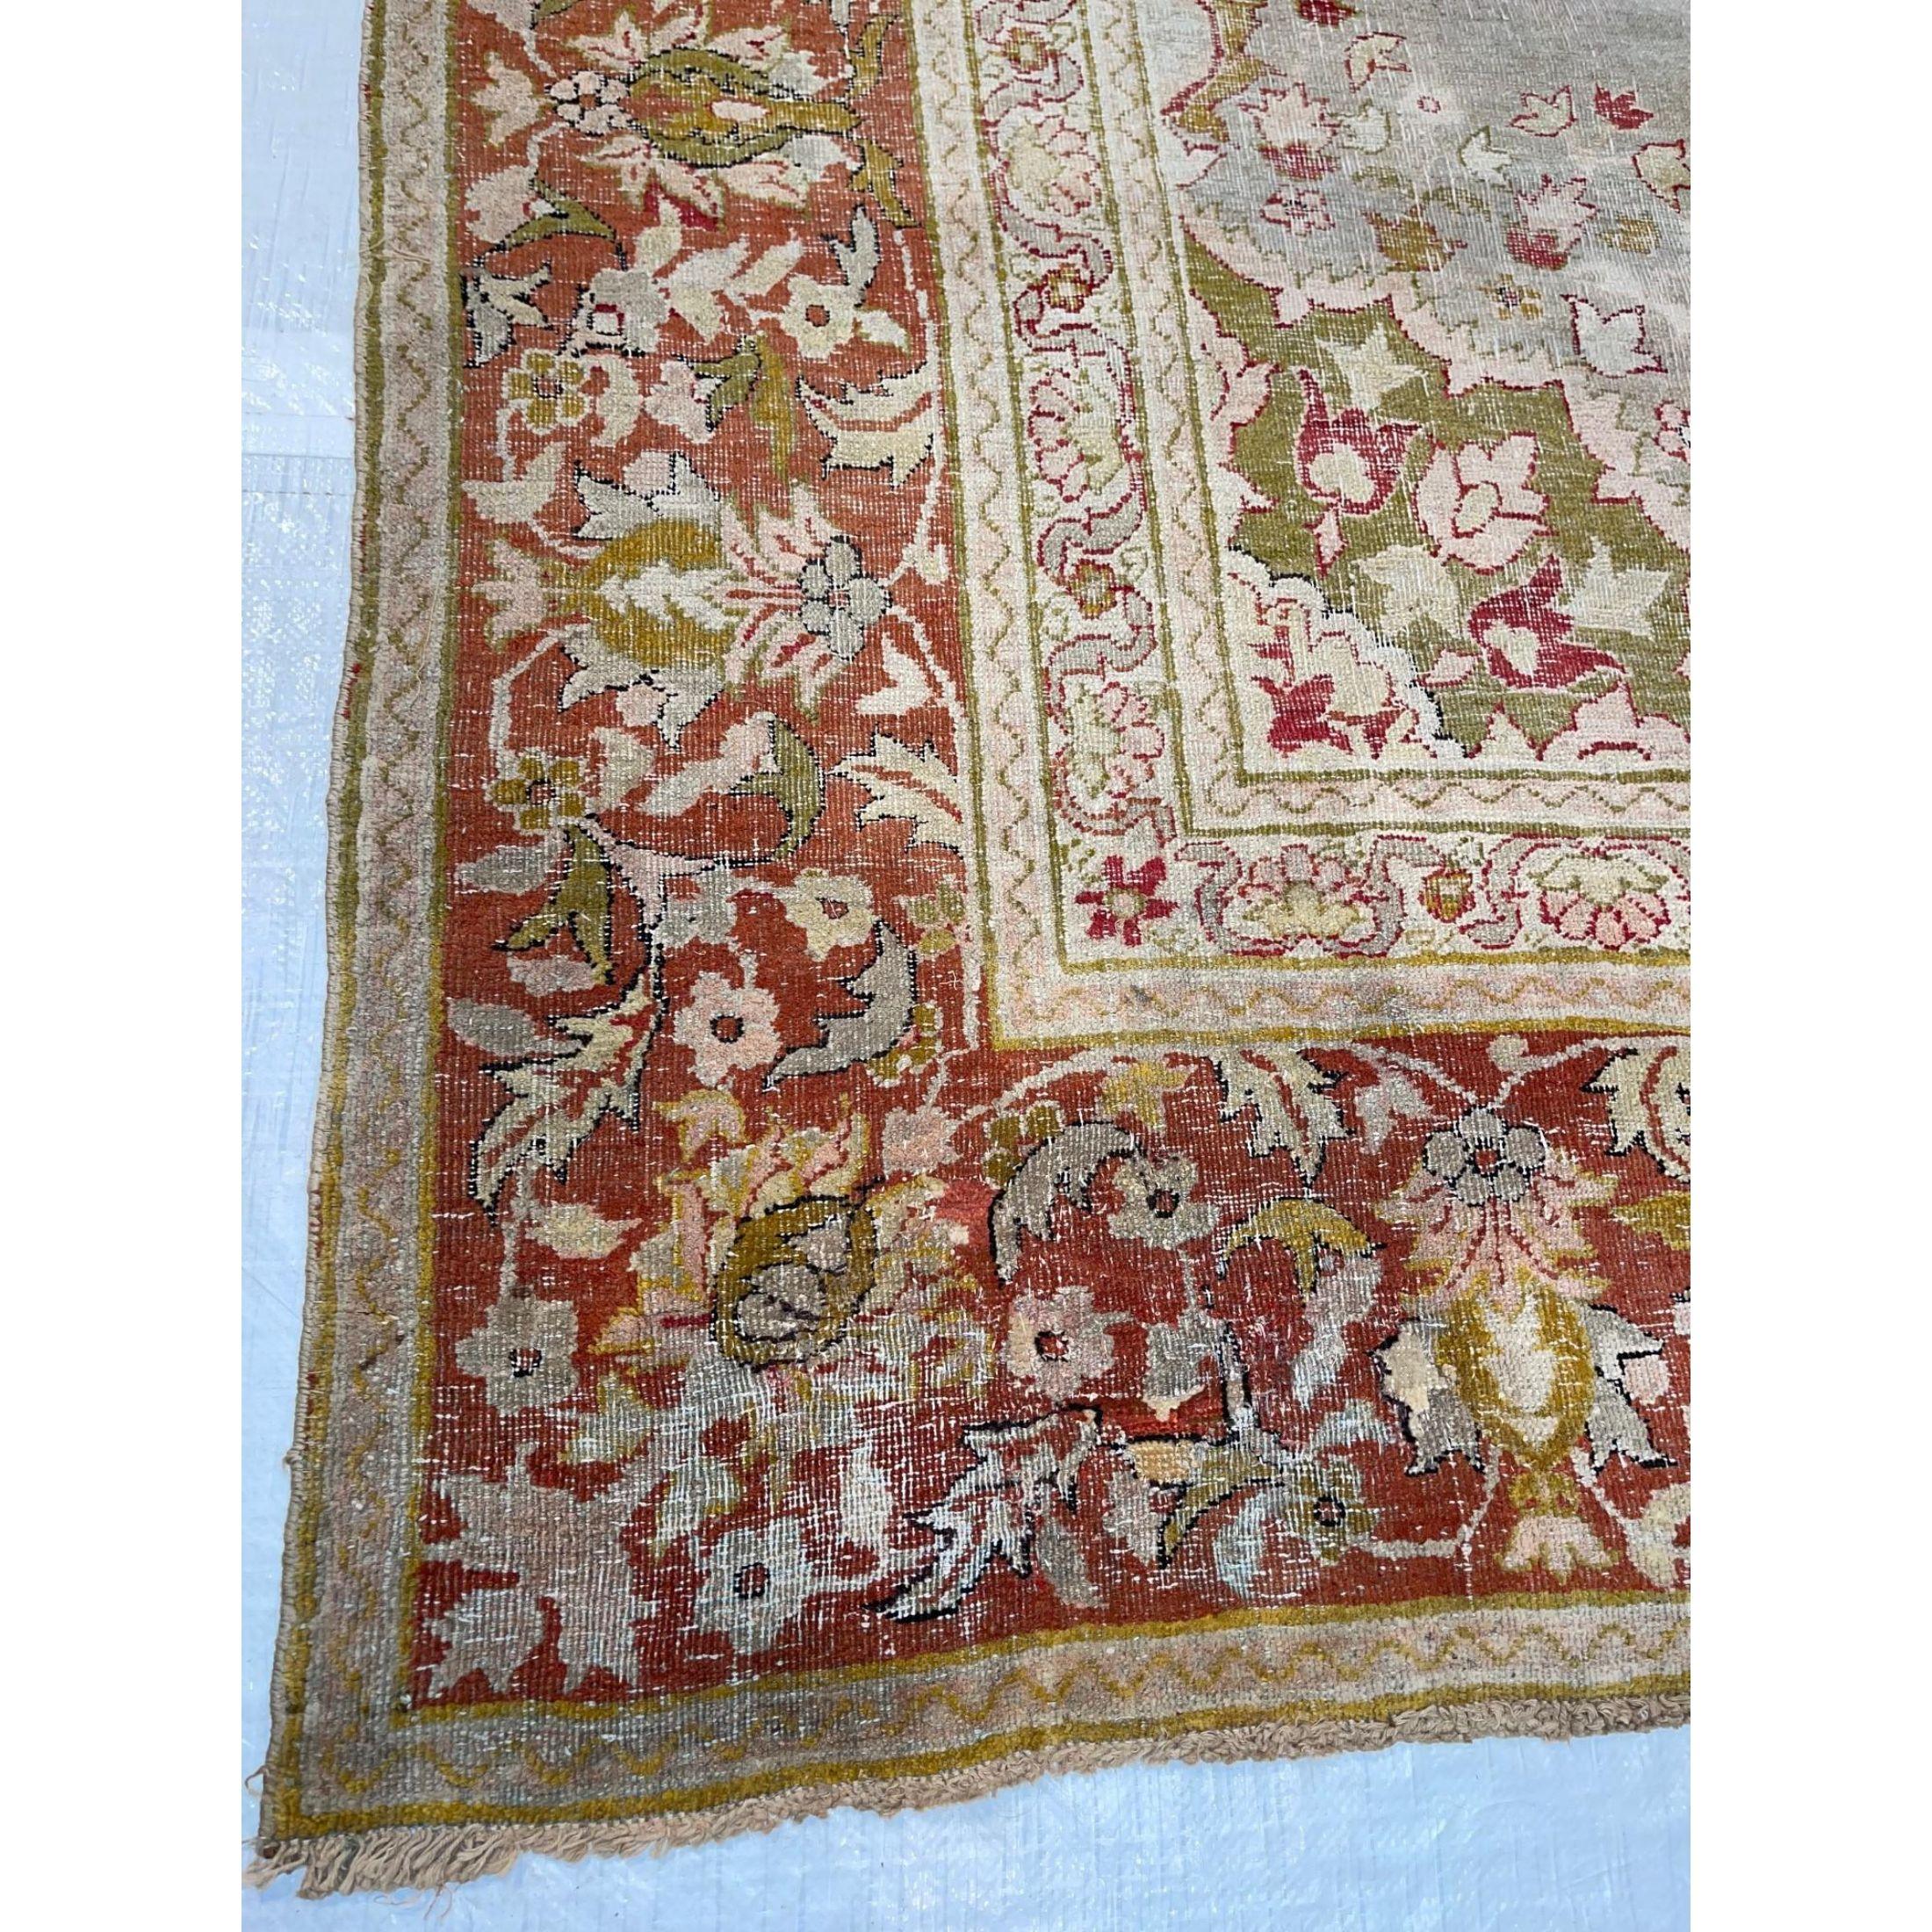 In der Zeit der Kolonialherrschaft über Indien begannen die Teppiche von Amritsar, westliche Einflüsse in ihrem Design widerzuspiegeln. Die Kunsthandwerker Nordindiens nutzten ihre Chance, von der ständig steigenden Nachfrage nach exotischen